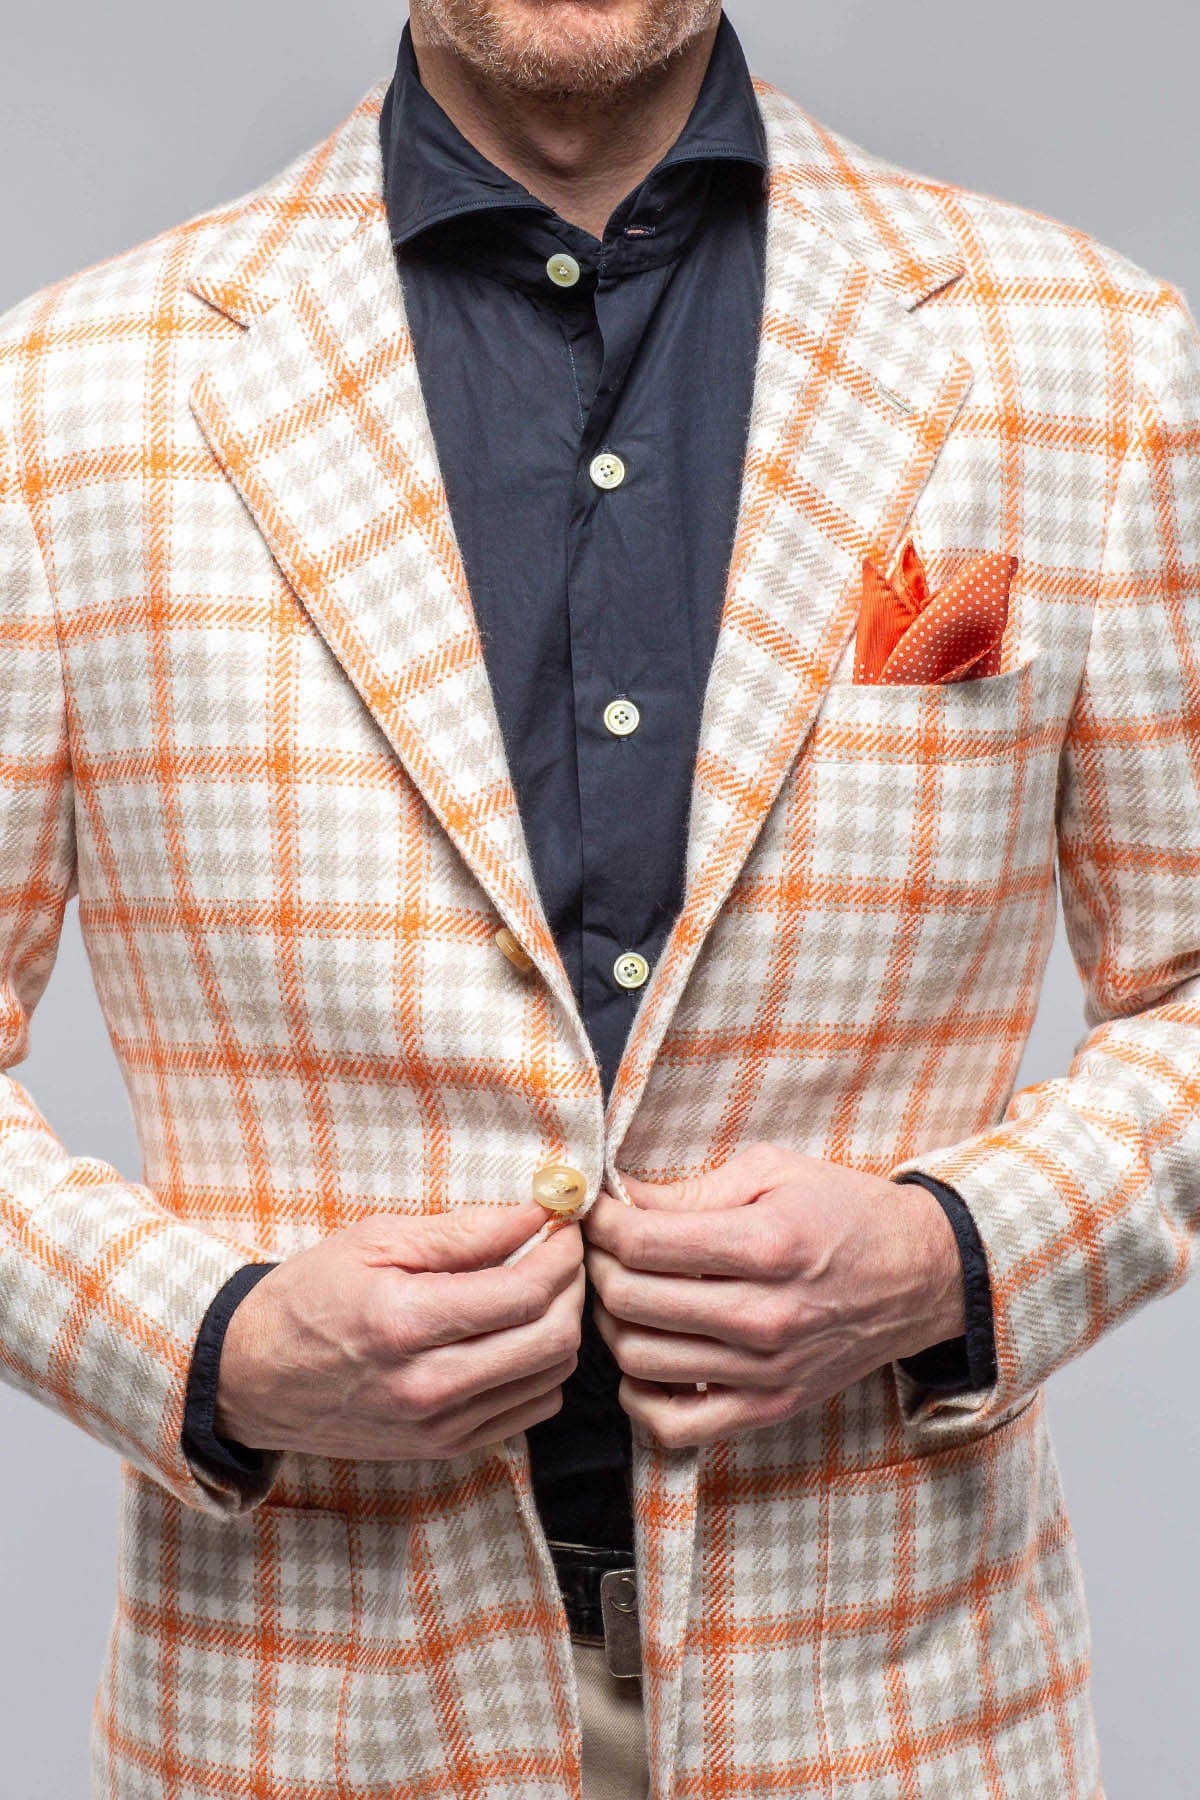 Eagan Cashmere Sport Coat in Cream and Orange - AXEL'S